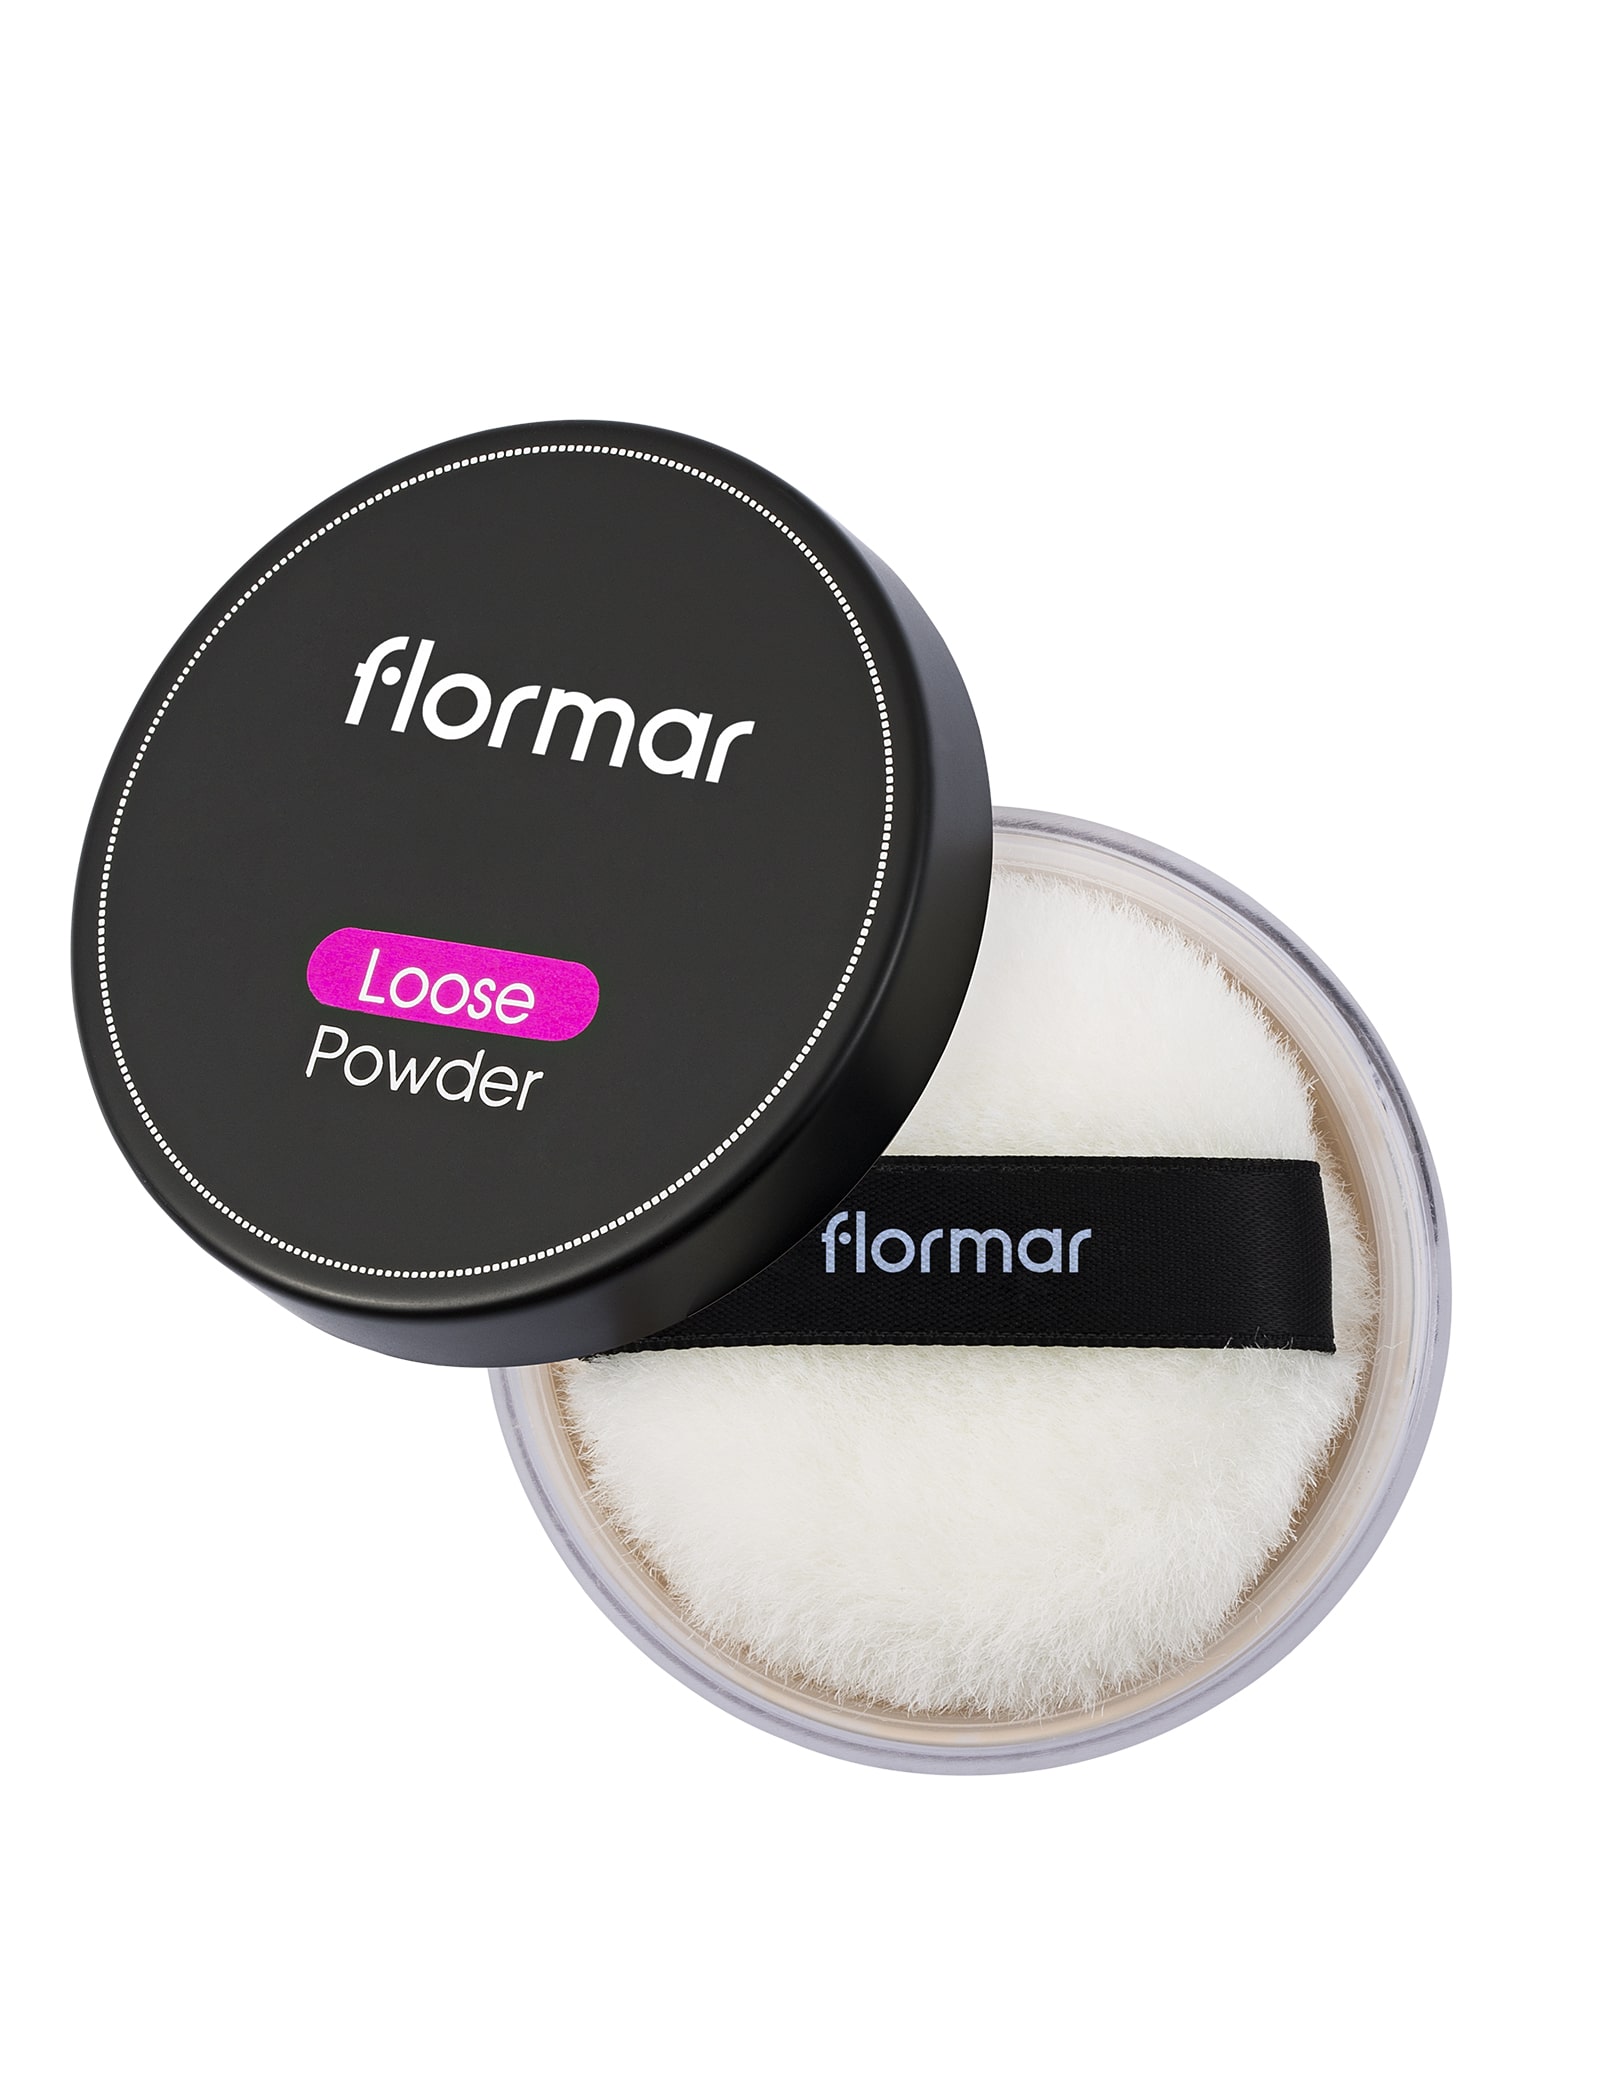 Flormar Loose Powder - 01